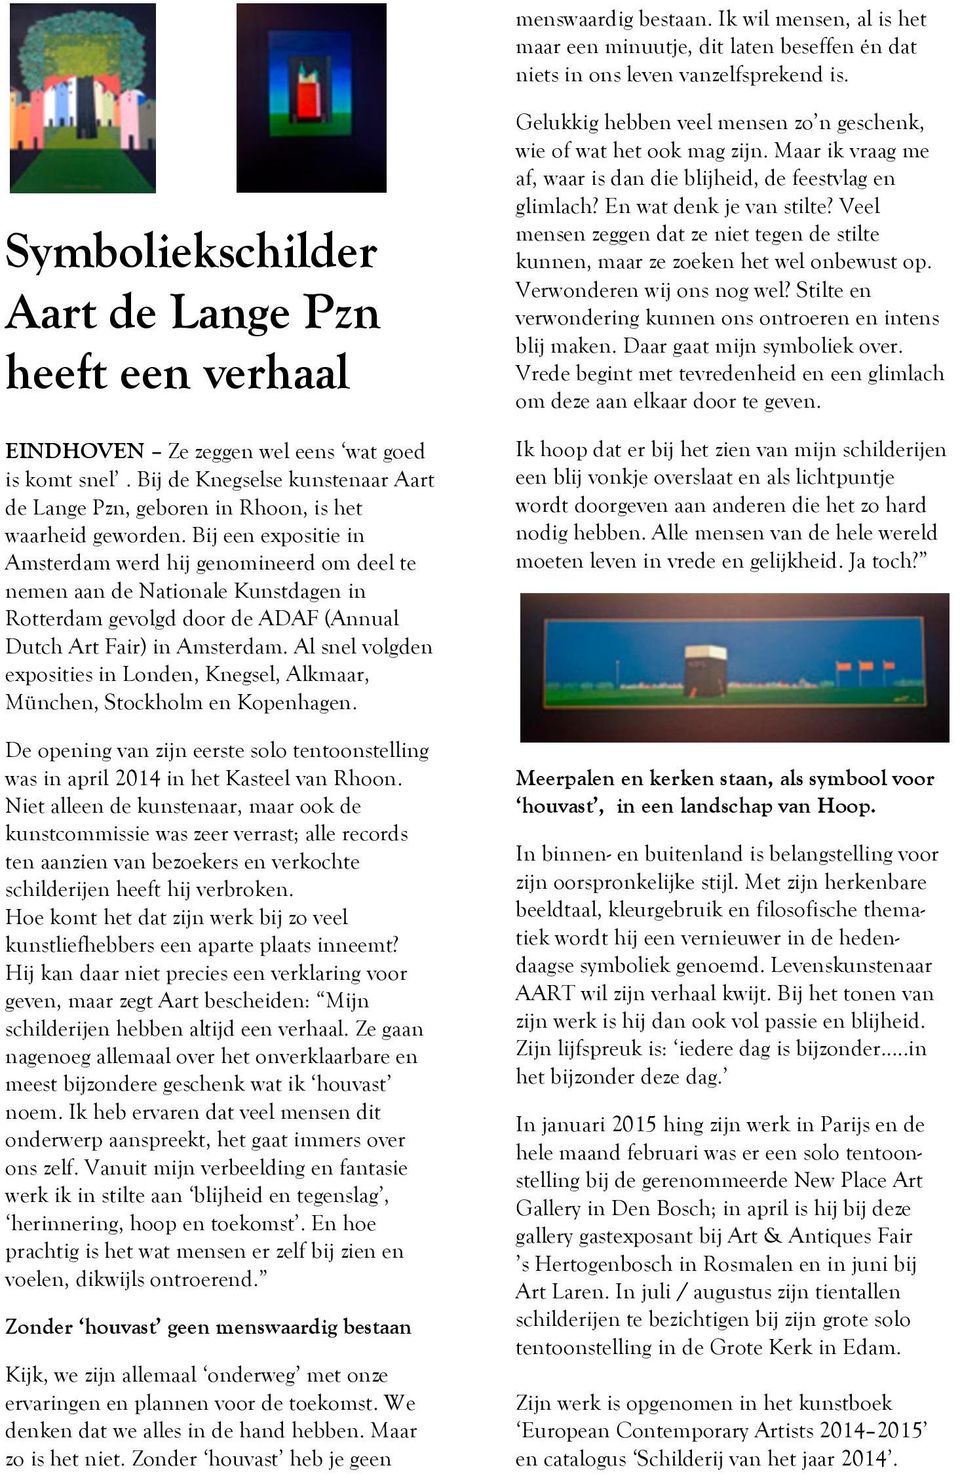 Bij een expositie in Amsterdam werd hij genomineerd om deel te nemen aan de Nationale Kunstdagen in Rotterdam gevolgd door de ADAF (Annual Dutch Art Fair) in Amsterdam.